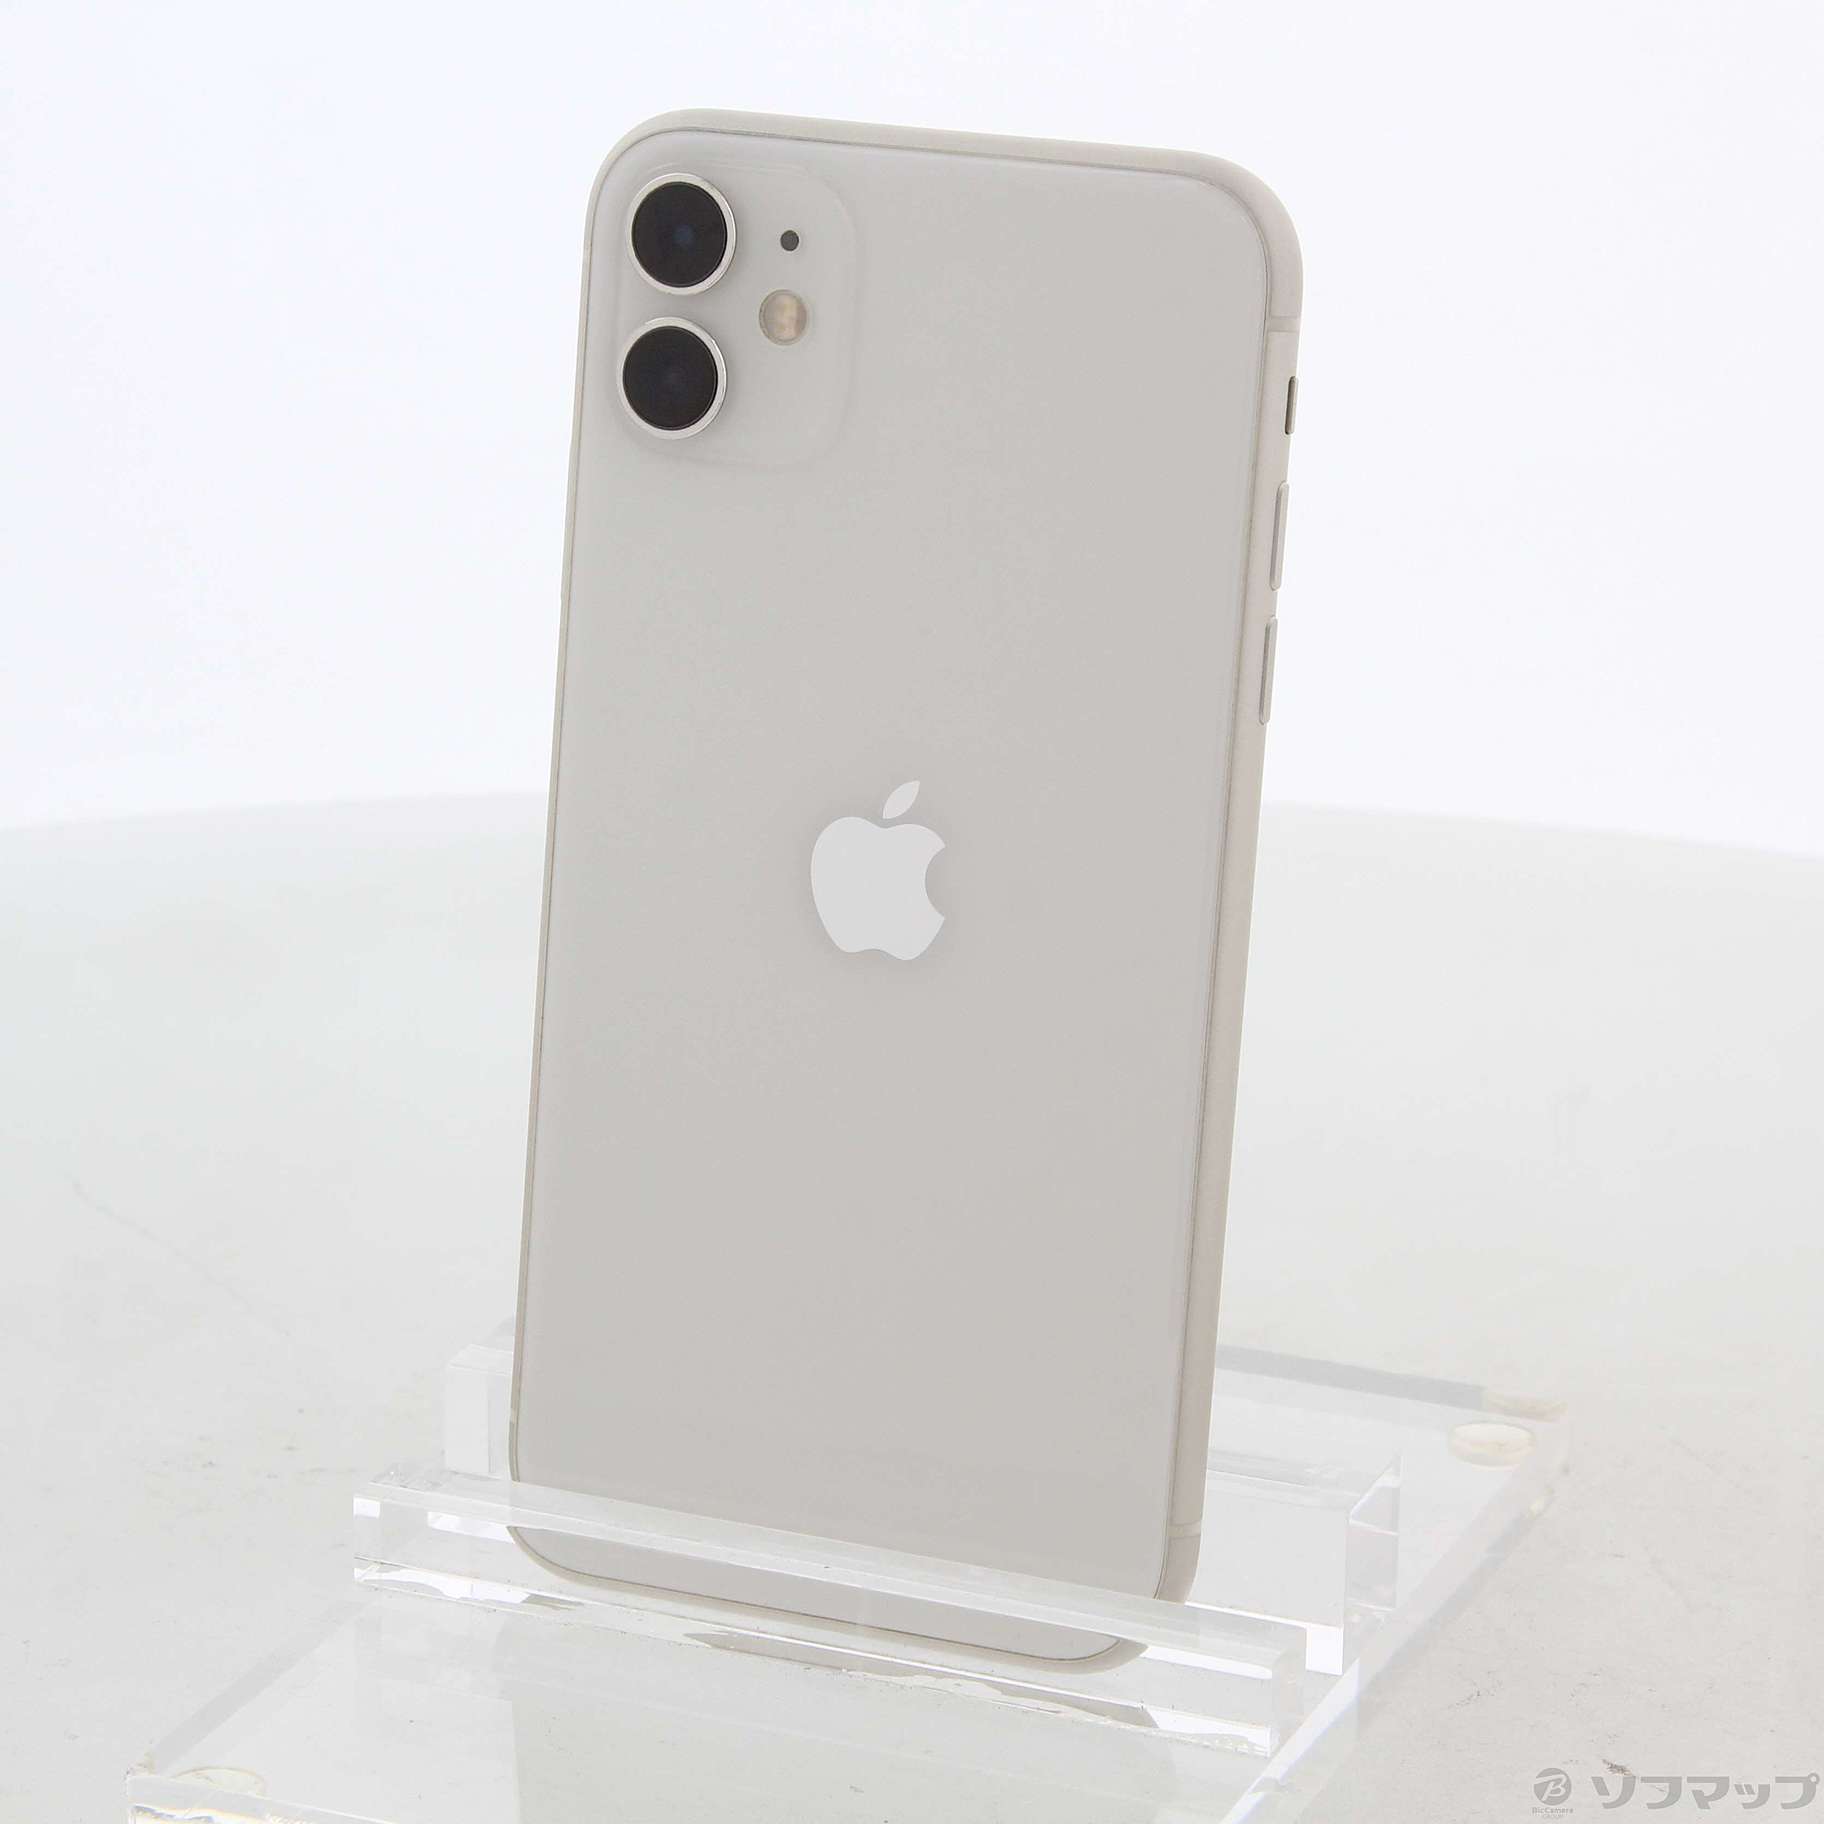 ポンクラ様専用 iPhone11 ホワイト 128GB SIMフリー - 本